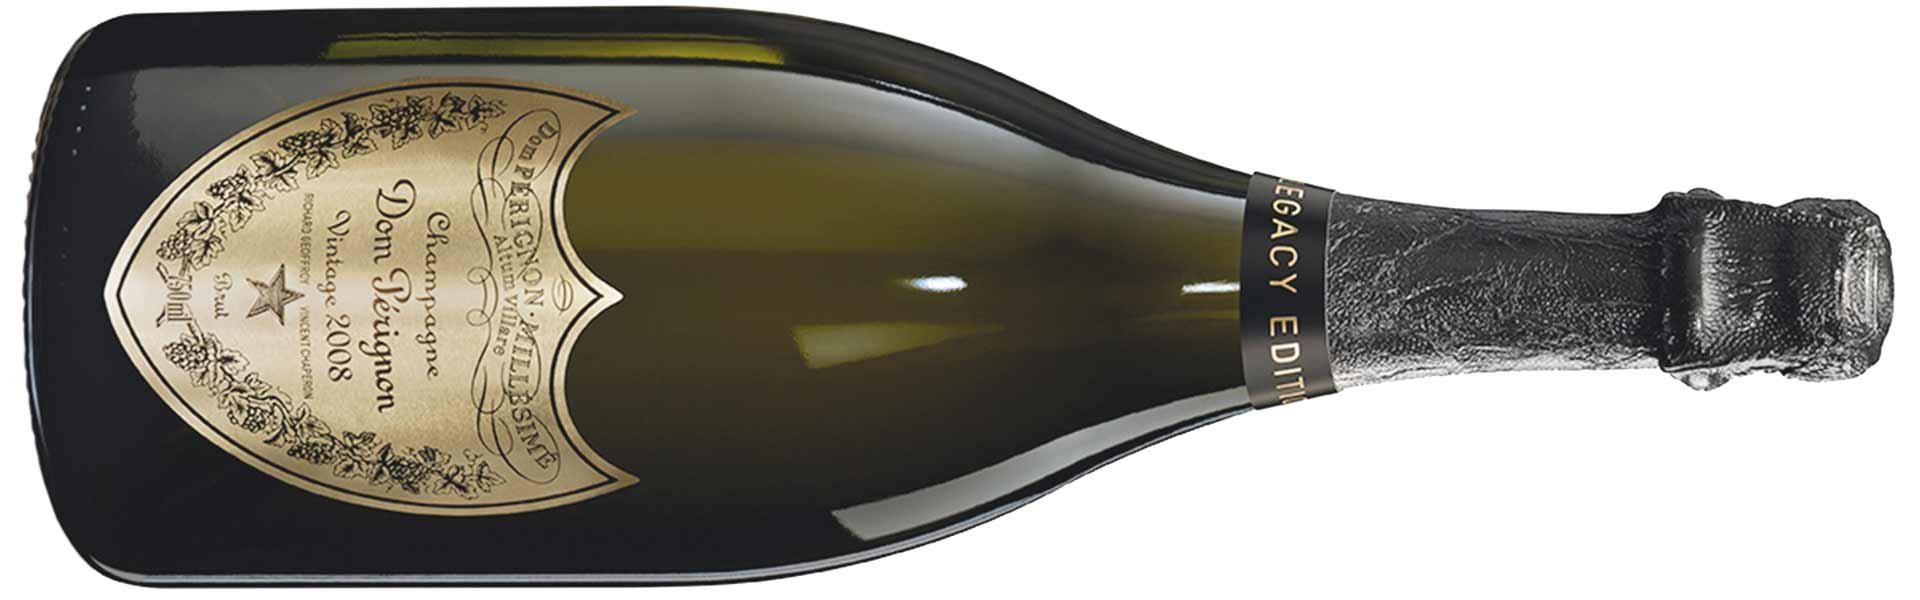 Der Mönch Dom Pérignon gilt auch als treibende Kraft bei der Entwicklung der Méthode Champenoise. Heute verzückt der aktuelle Jahrgang 2008 von Dom Pérignon Experten und Kenner.